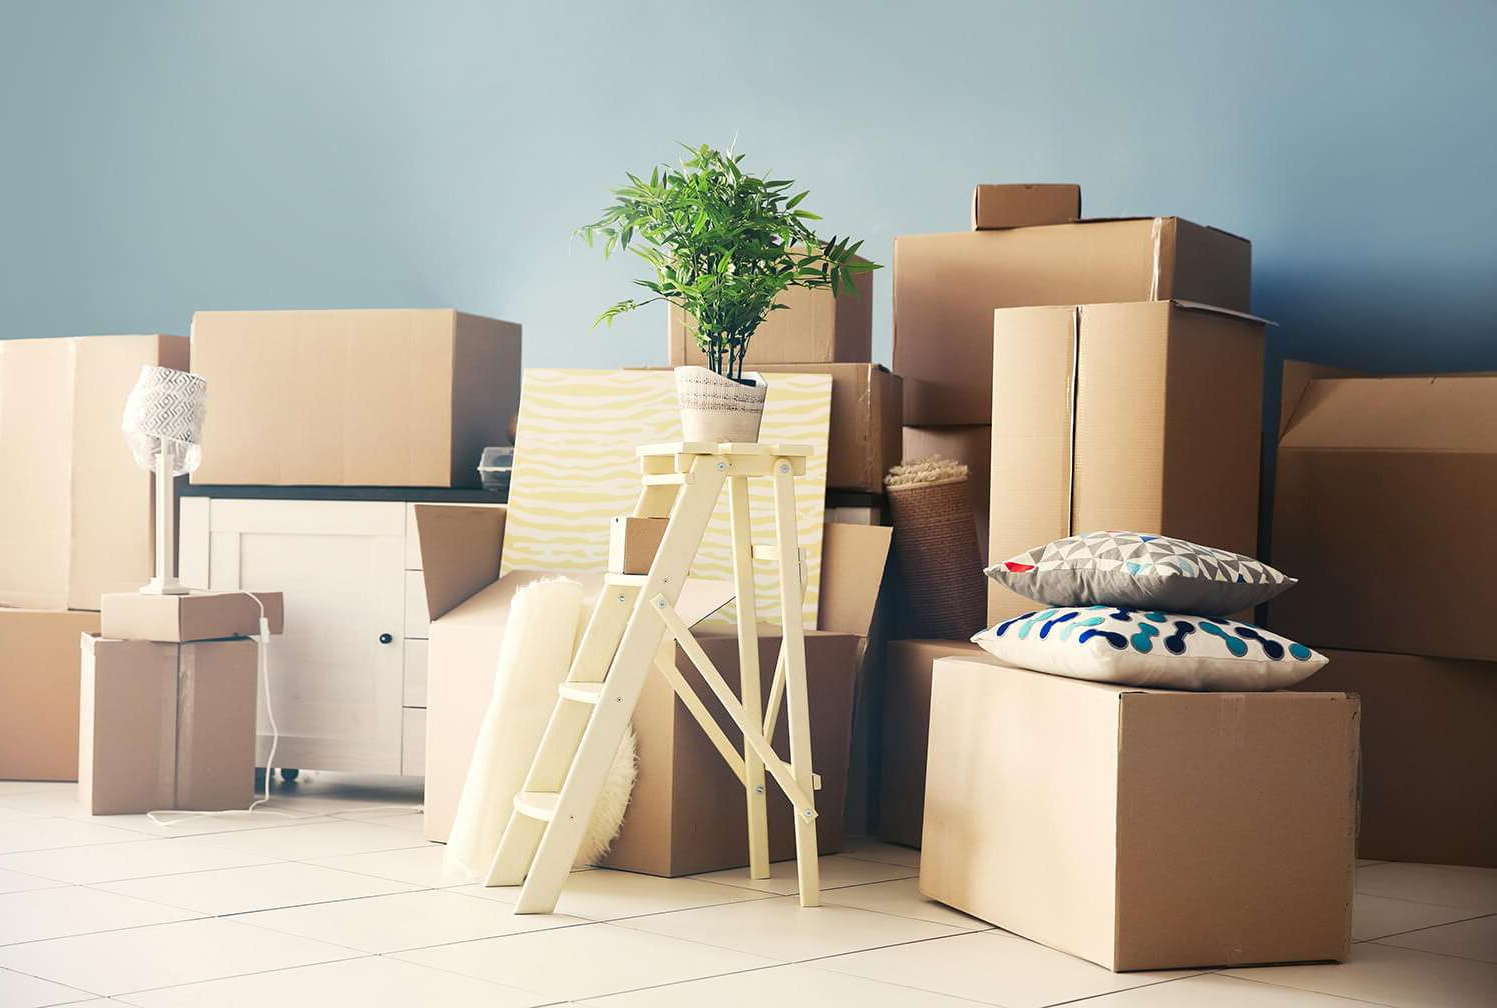 Сколько стоит квартирный переезд. Комната с коробками. Картонные коробки в интерьере. Упаковка мебели. Картонные коробки в интерьере комнаты.